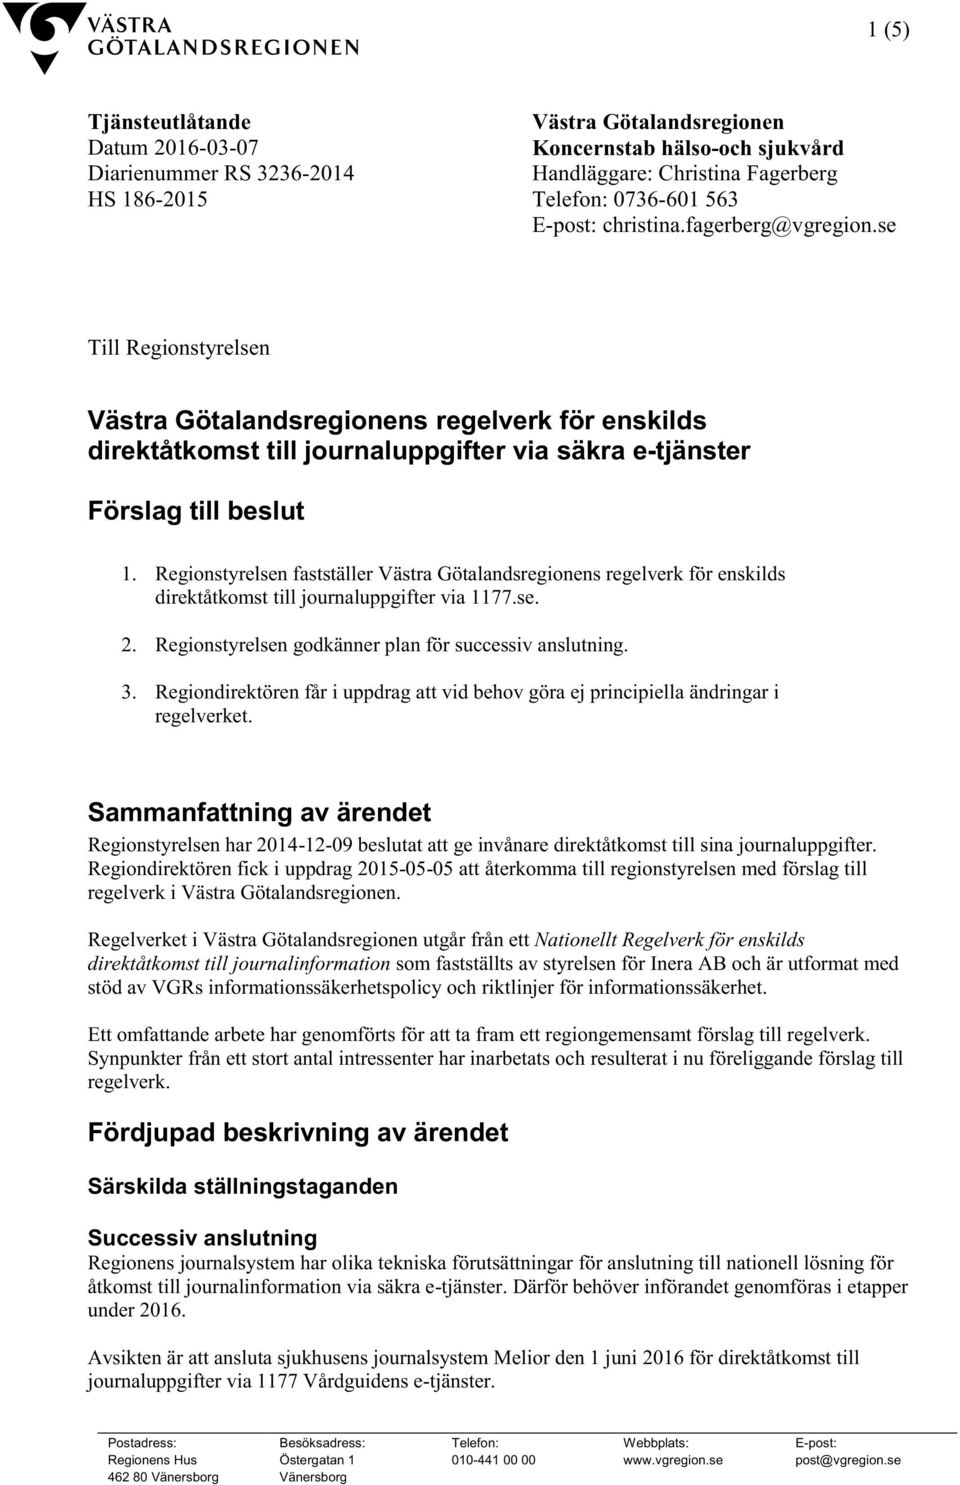 Regionstyrelsen fastställer Västra Götalandsregionens regelverk för enskilds direktåtkomst till journaluppgifter via 1177.se. 2. Regionstyrelsen godkänner plan för successiv anslutning. 3.